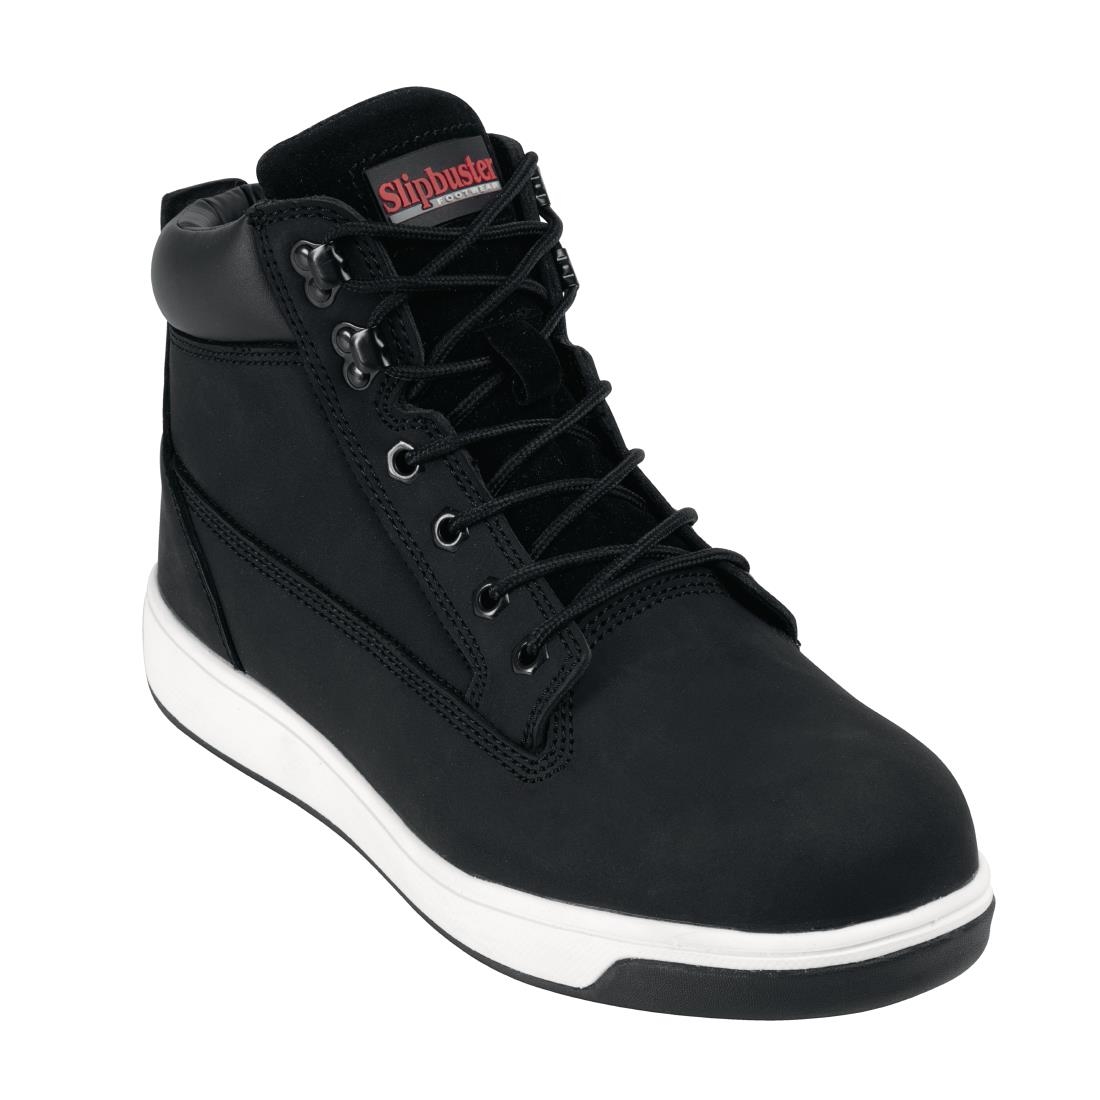 Slipbuster Sneaker Boots Black 40